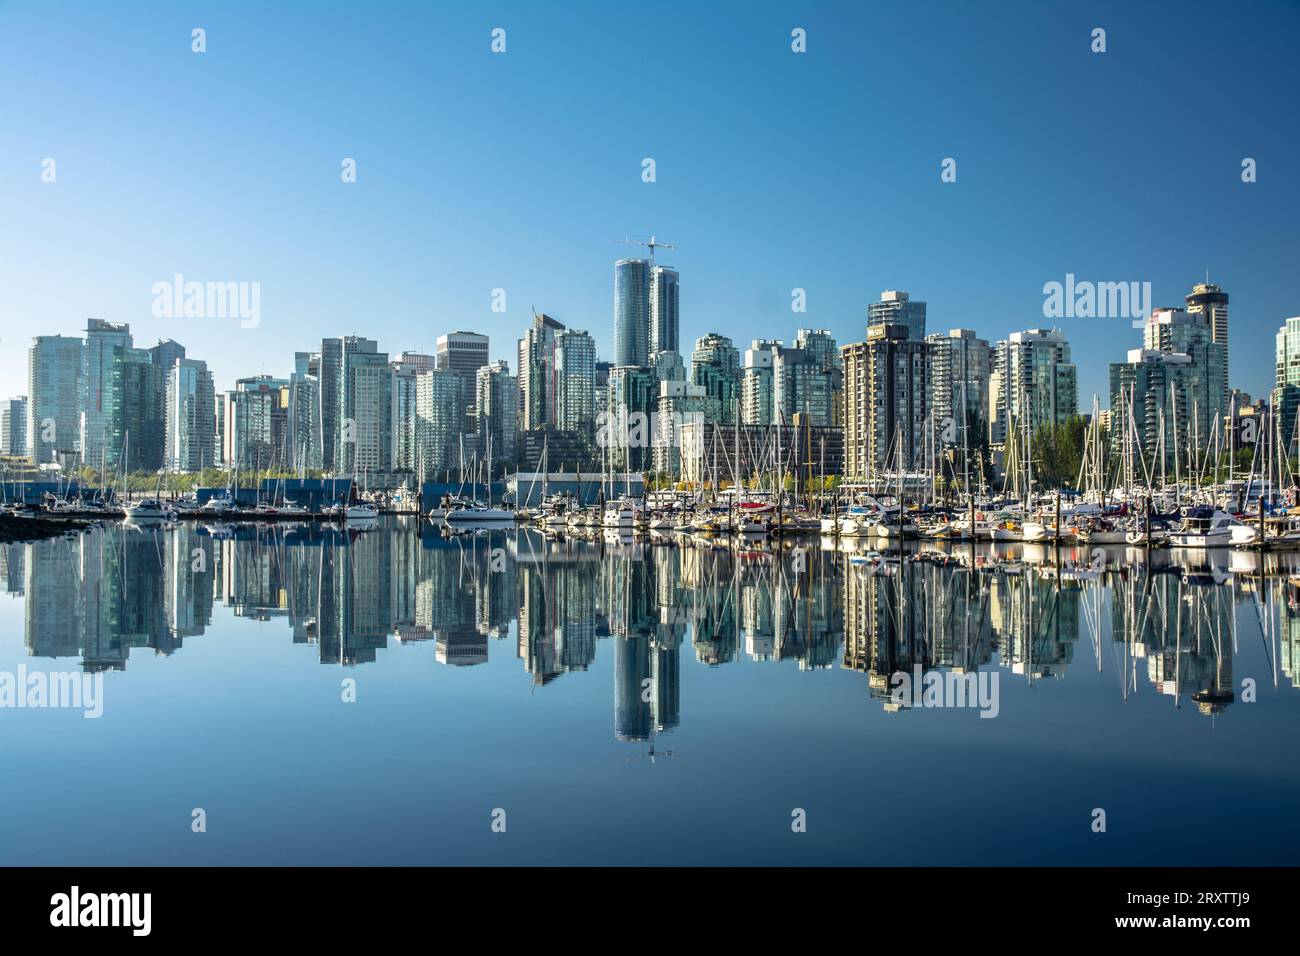 Skyline de Vancouver, avec un reflet parfait des gratte-ciel dans les eaux bleues du parc Stanley, Vancouver, Colombie-Britannique, Canada, Amérique du Nord Banque D'Images